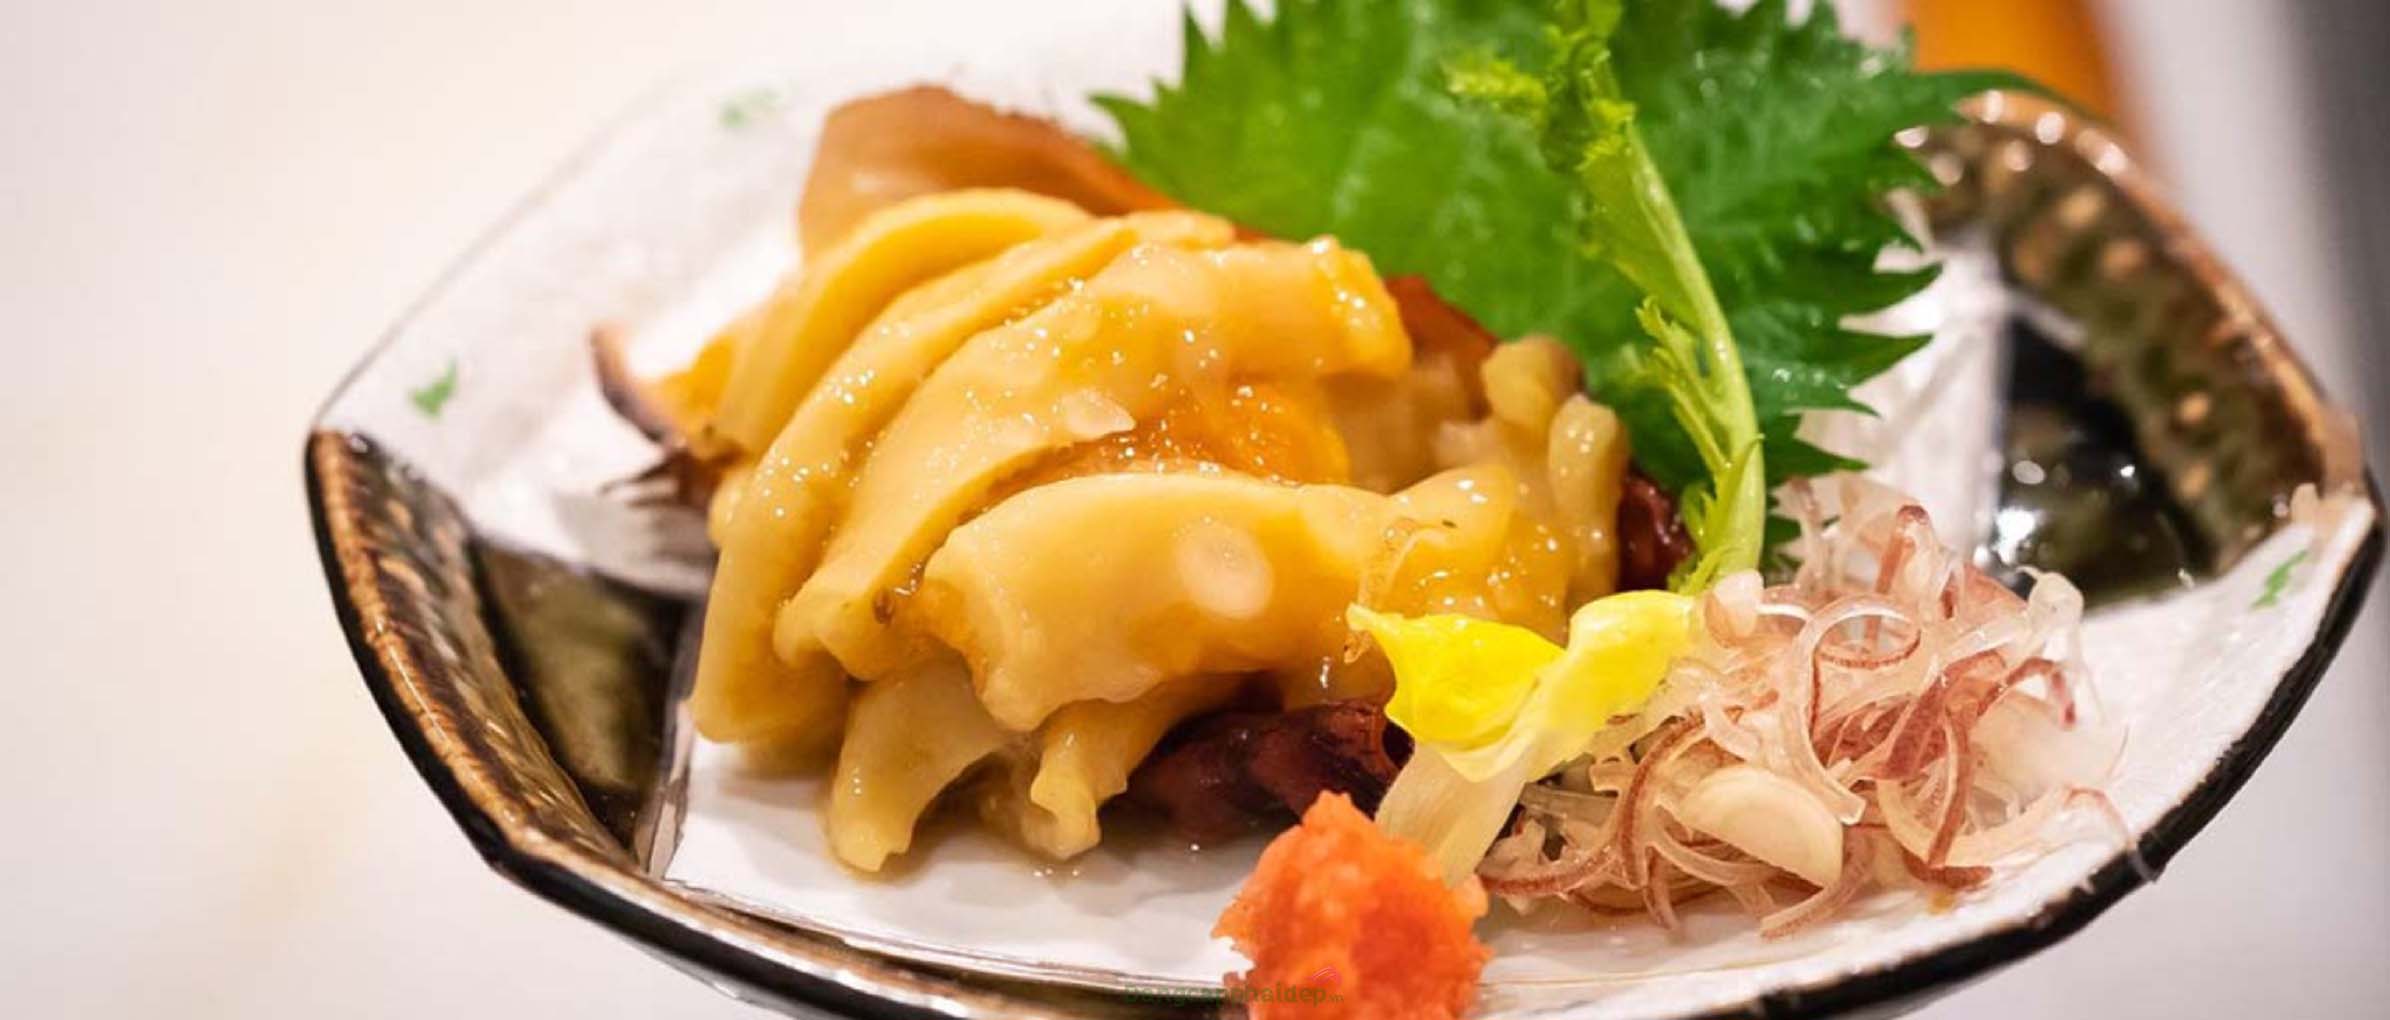 Sashimi Sâm Biển là một trong những món ăn phổ biến tại Nhật